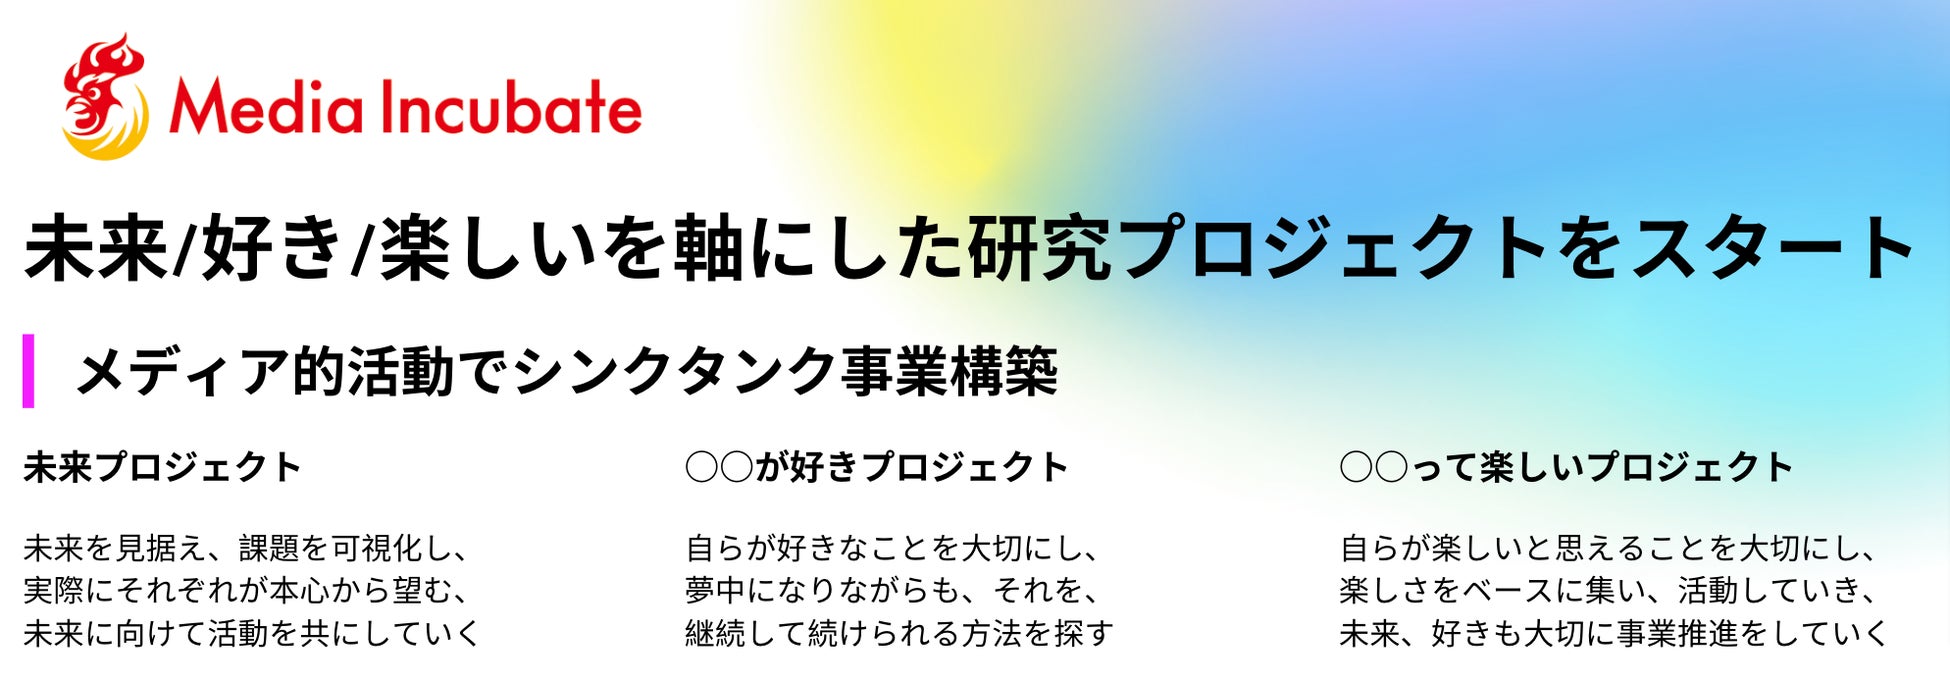 【50メディア以上の支援実績をもとにした『コミュニティドリブンマーケティング』】こどもの未来総研運営の「ママ広場」がマーケティングサービス開始。120名を突破した「東京都中央区ママ広場」とも連携のサブ画像3